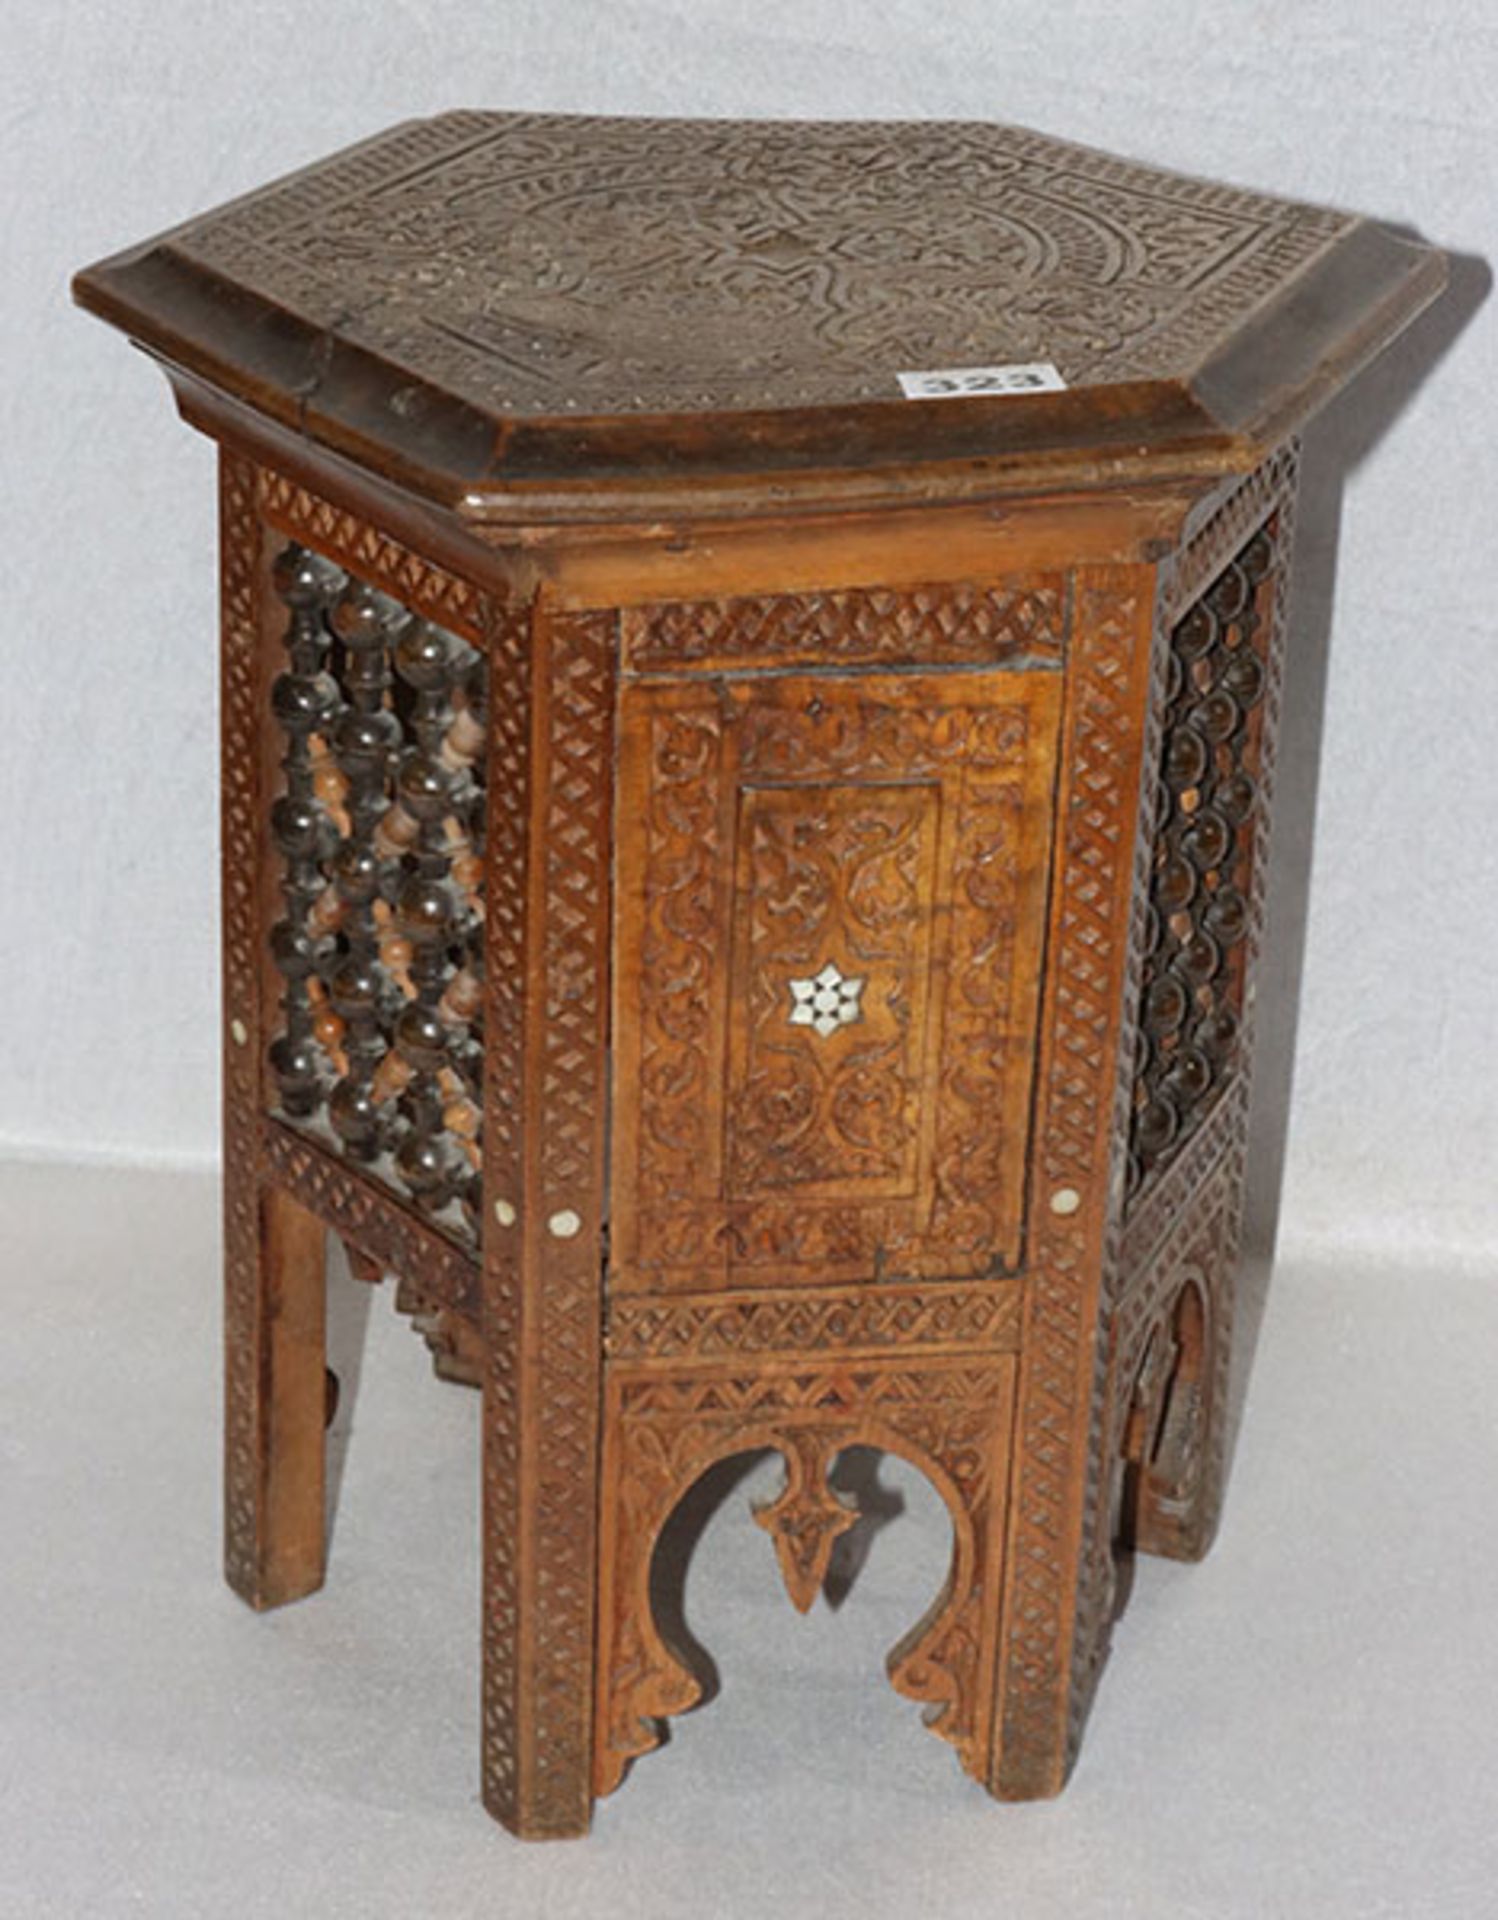 Arabischer Hocker, 6-eckig, Holz beschnitzt, H 42 cm, D 36 cm, Alters- und Gebrauchsspuren, teils